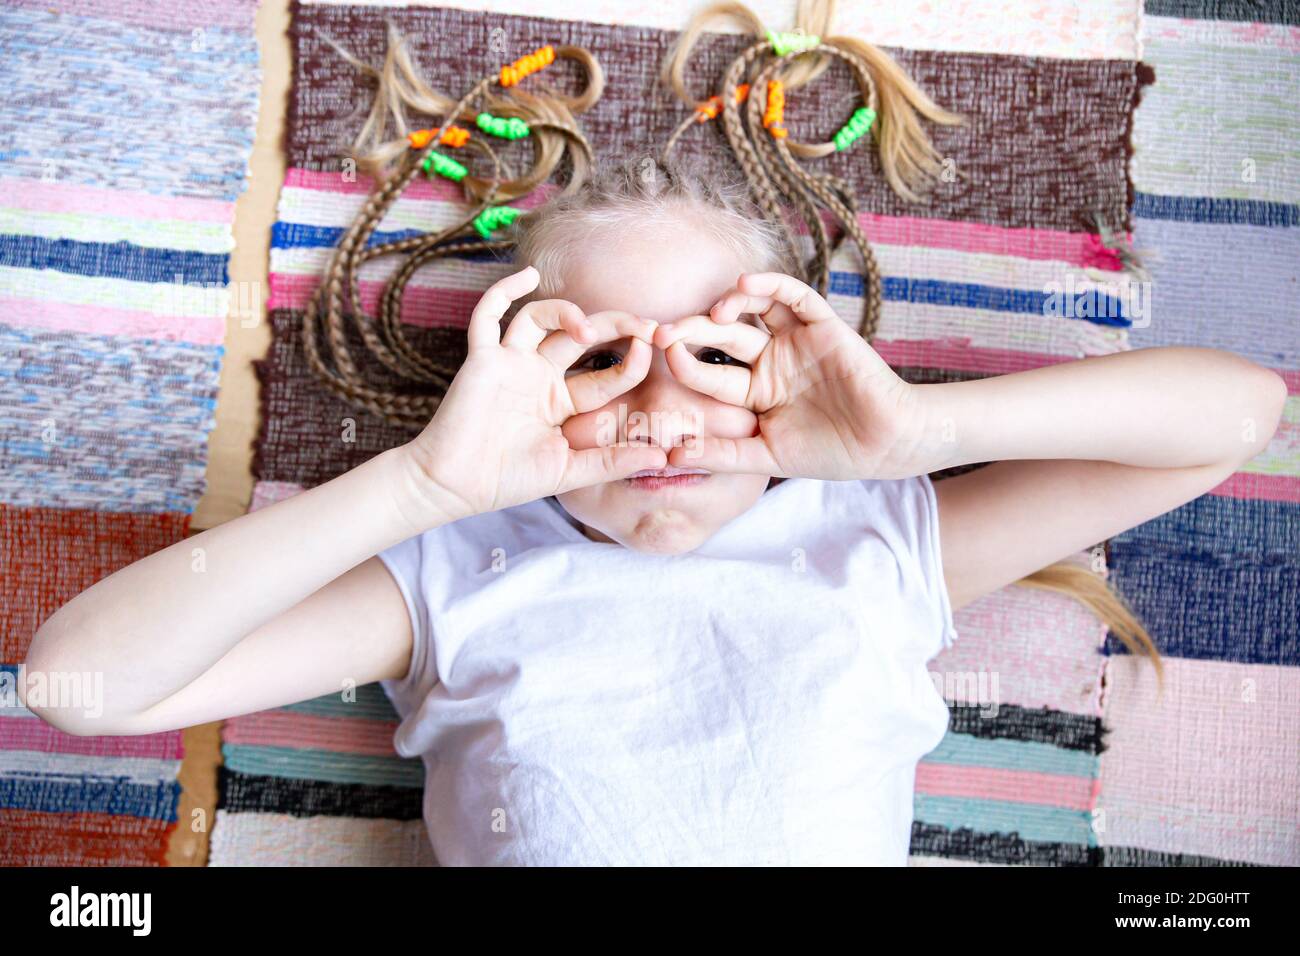 Portrait en gros plan une jeune fille gaie avec des queues de porc, repose sur un tapis tissé rayé, sourires, lunettes des doigts pliés. Banque D'Images